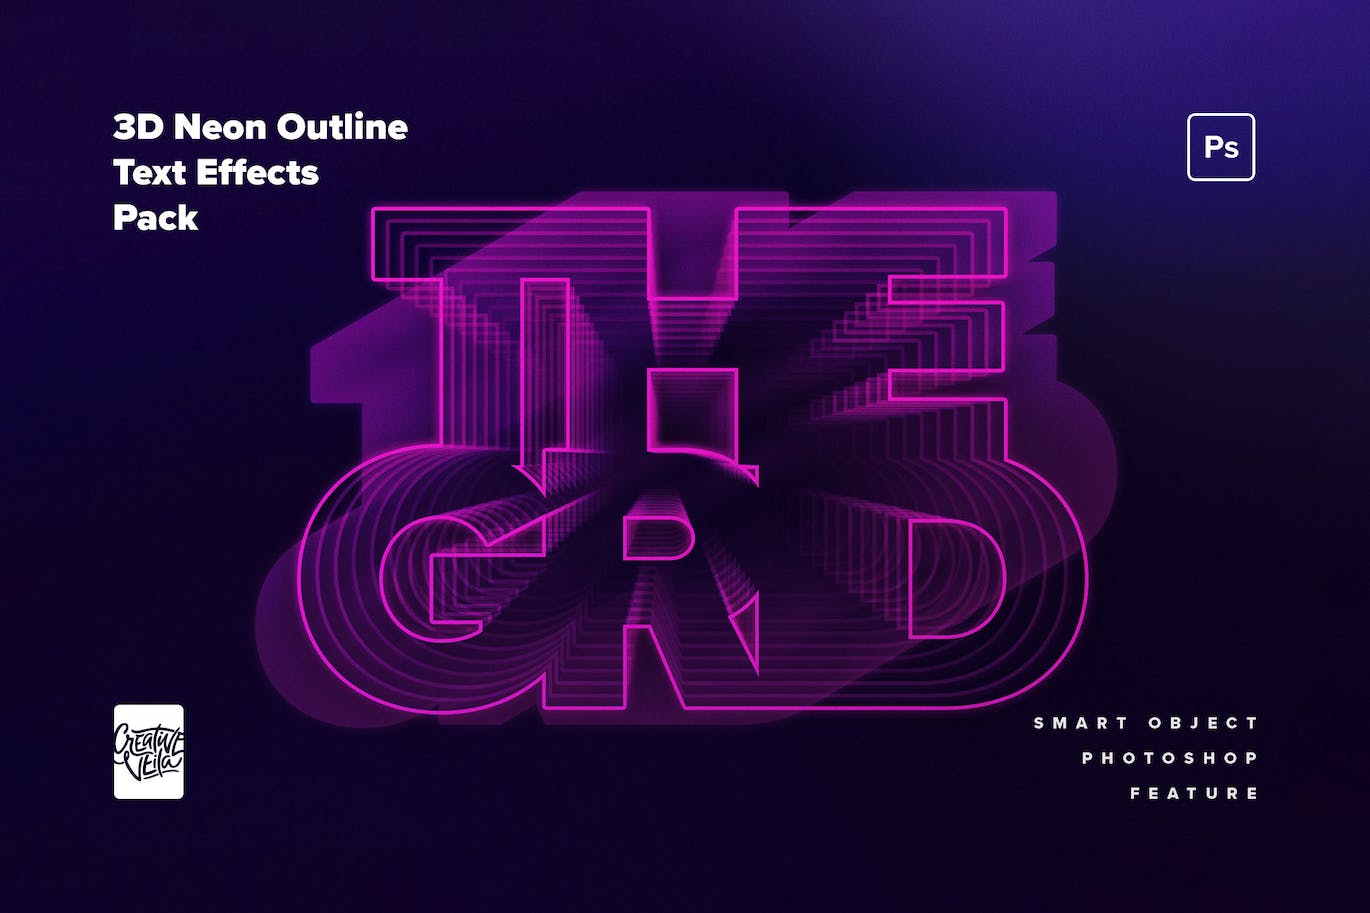 80年代复古未来主义3D霓虹灯文本效果 80s Retro-Futuristic 3D Neon Text Effect 插件预设 第1张